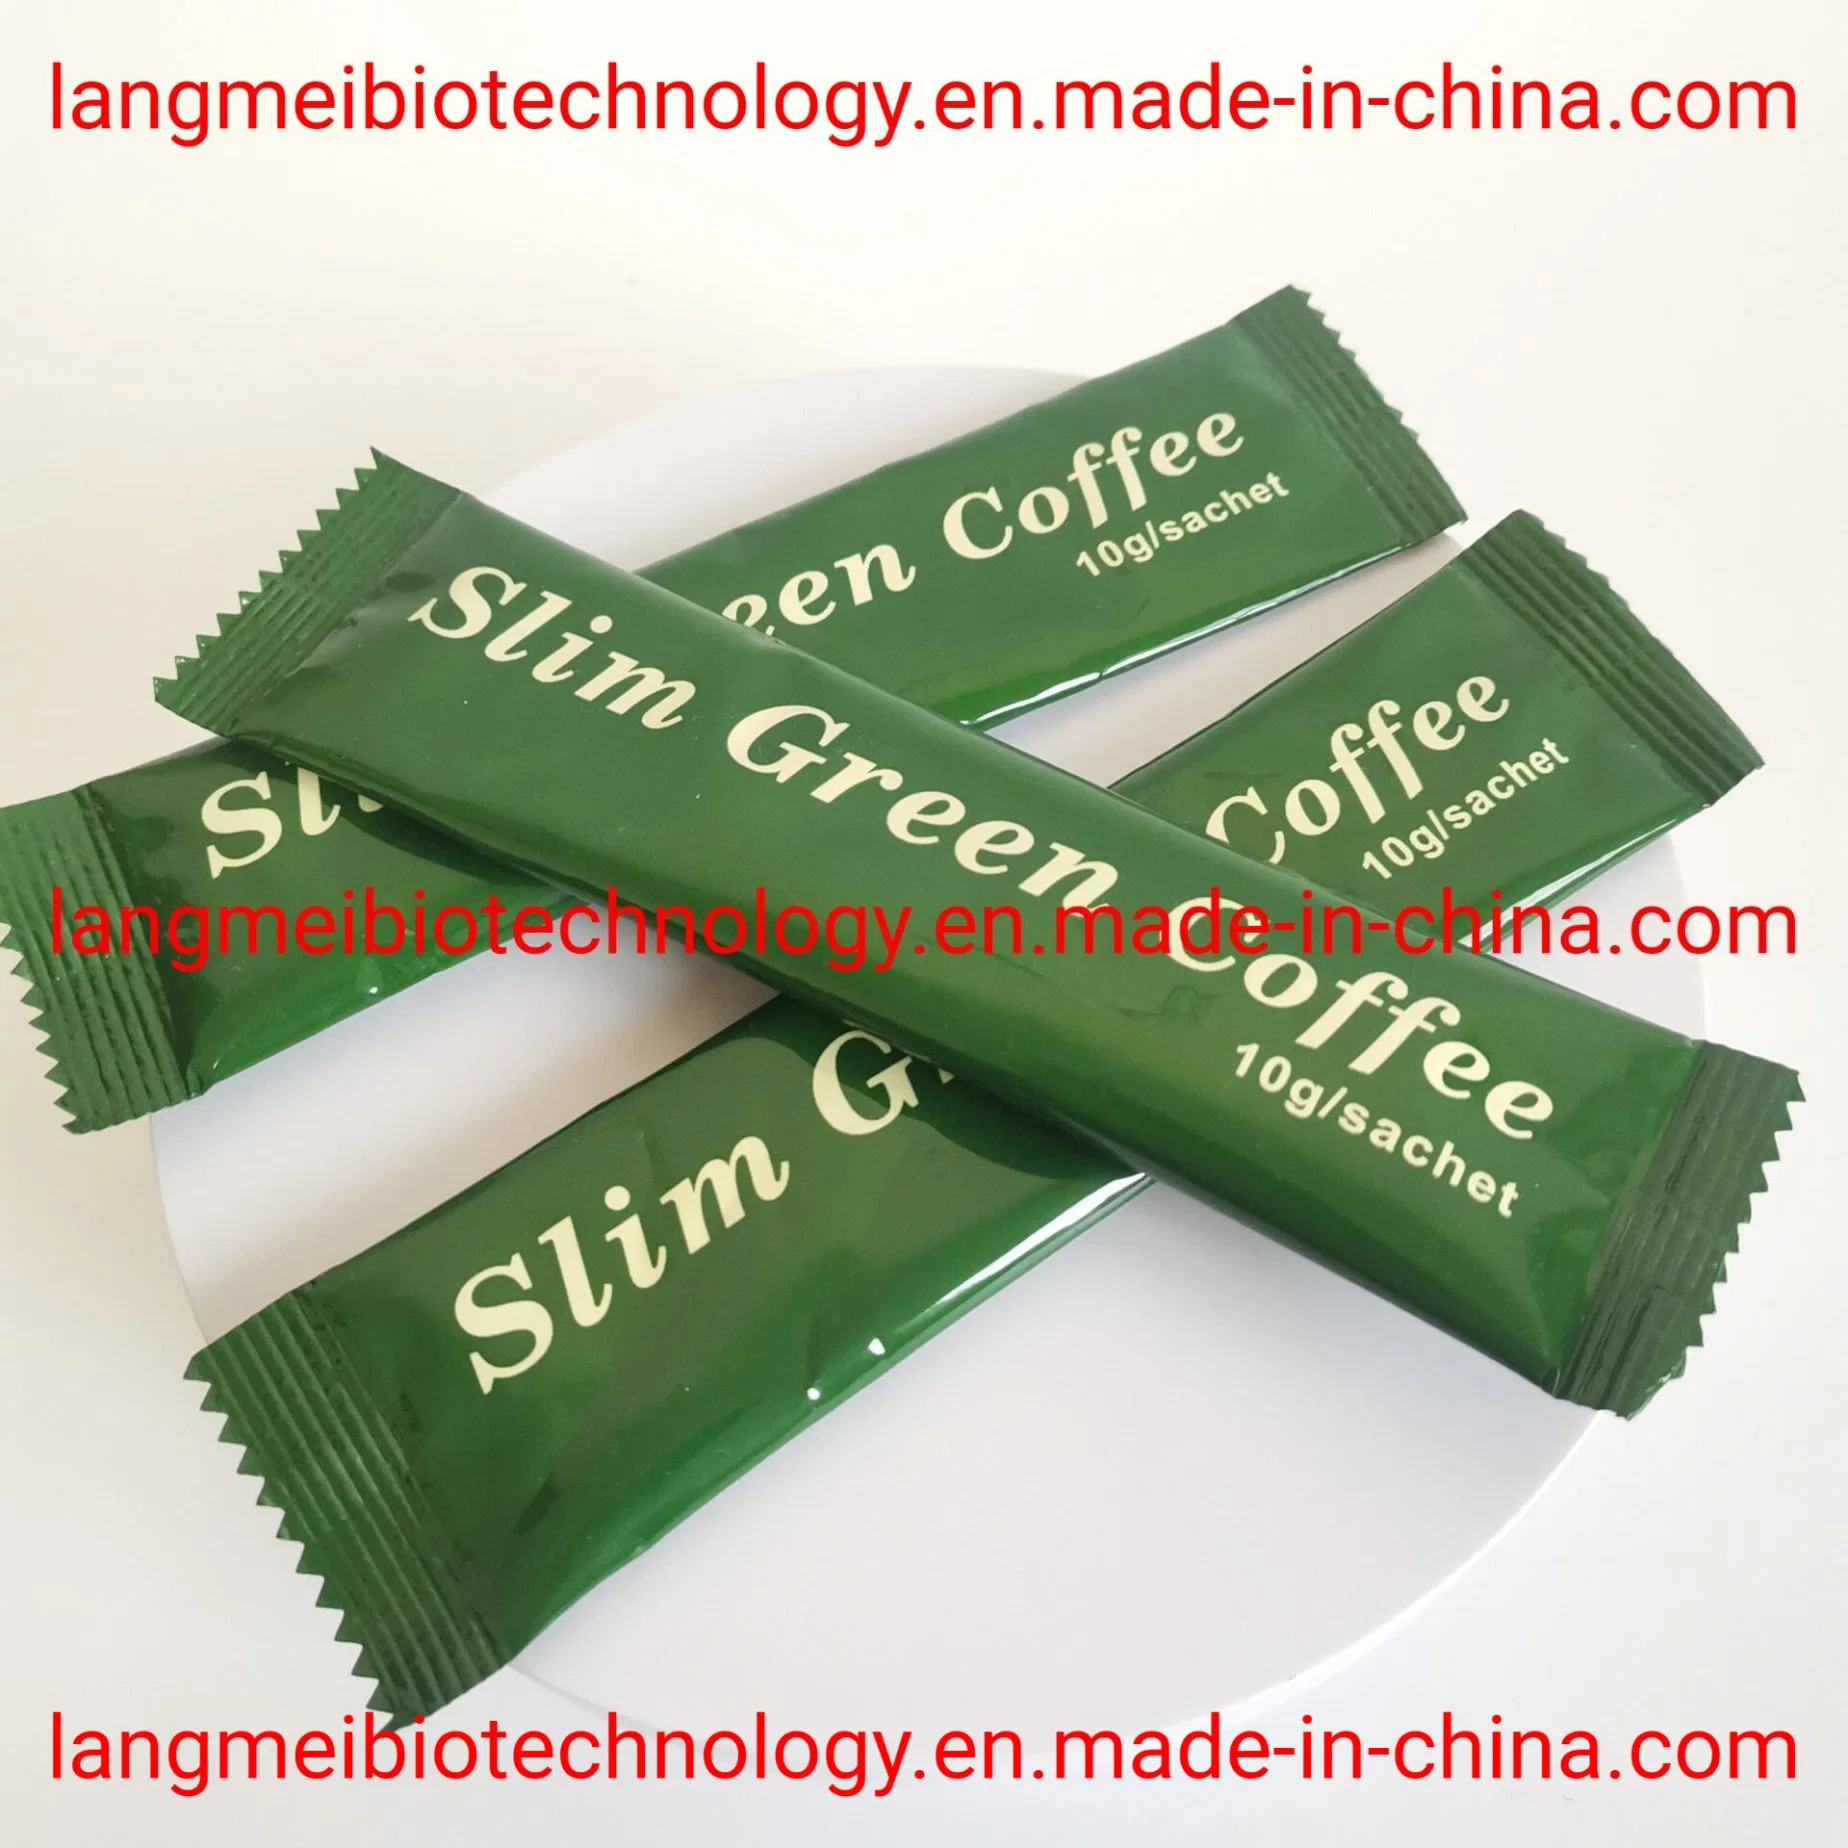 No Side 100% Original Instant Slimming Green Coffee Gewichtsverlust Kaffee